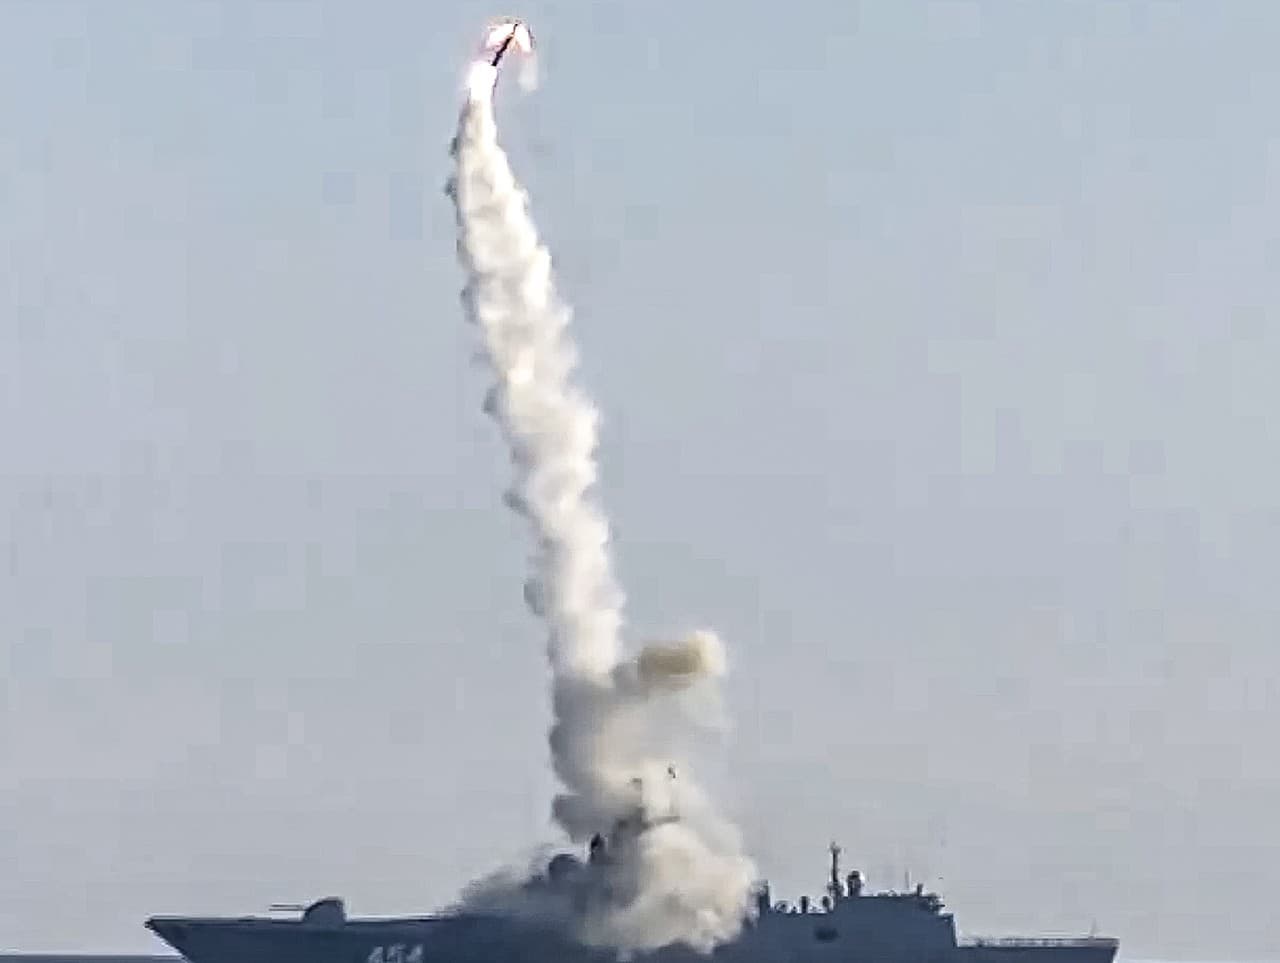 Štart testovanej hypersonickej strely 3M22 Zirkon z fregaty Admiral Gorškov v Bielom mori na severe Ruska 